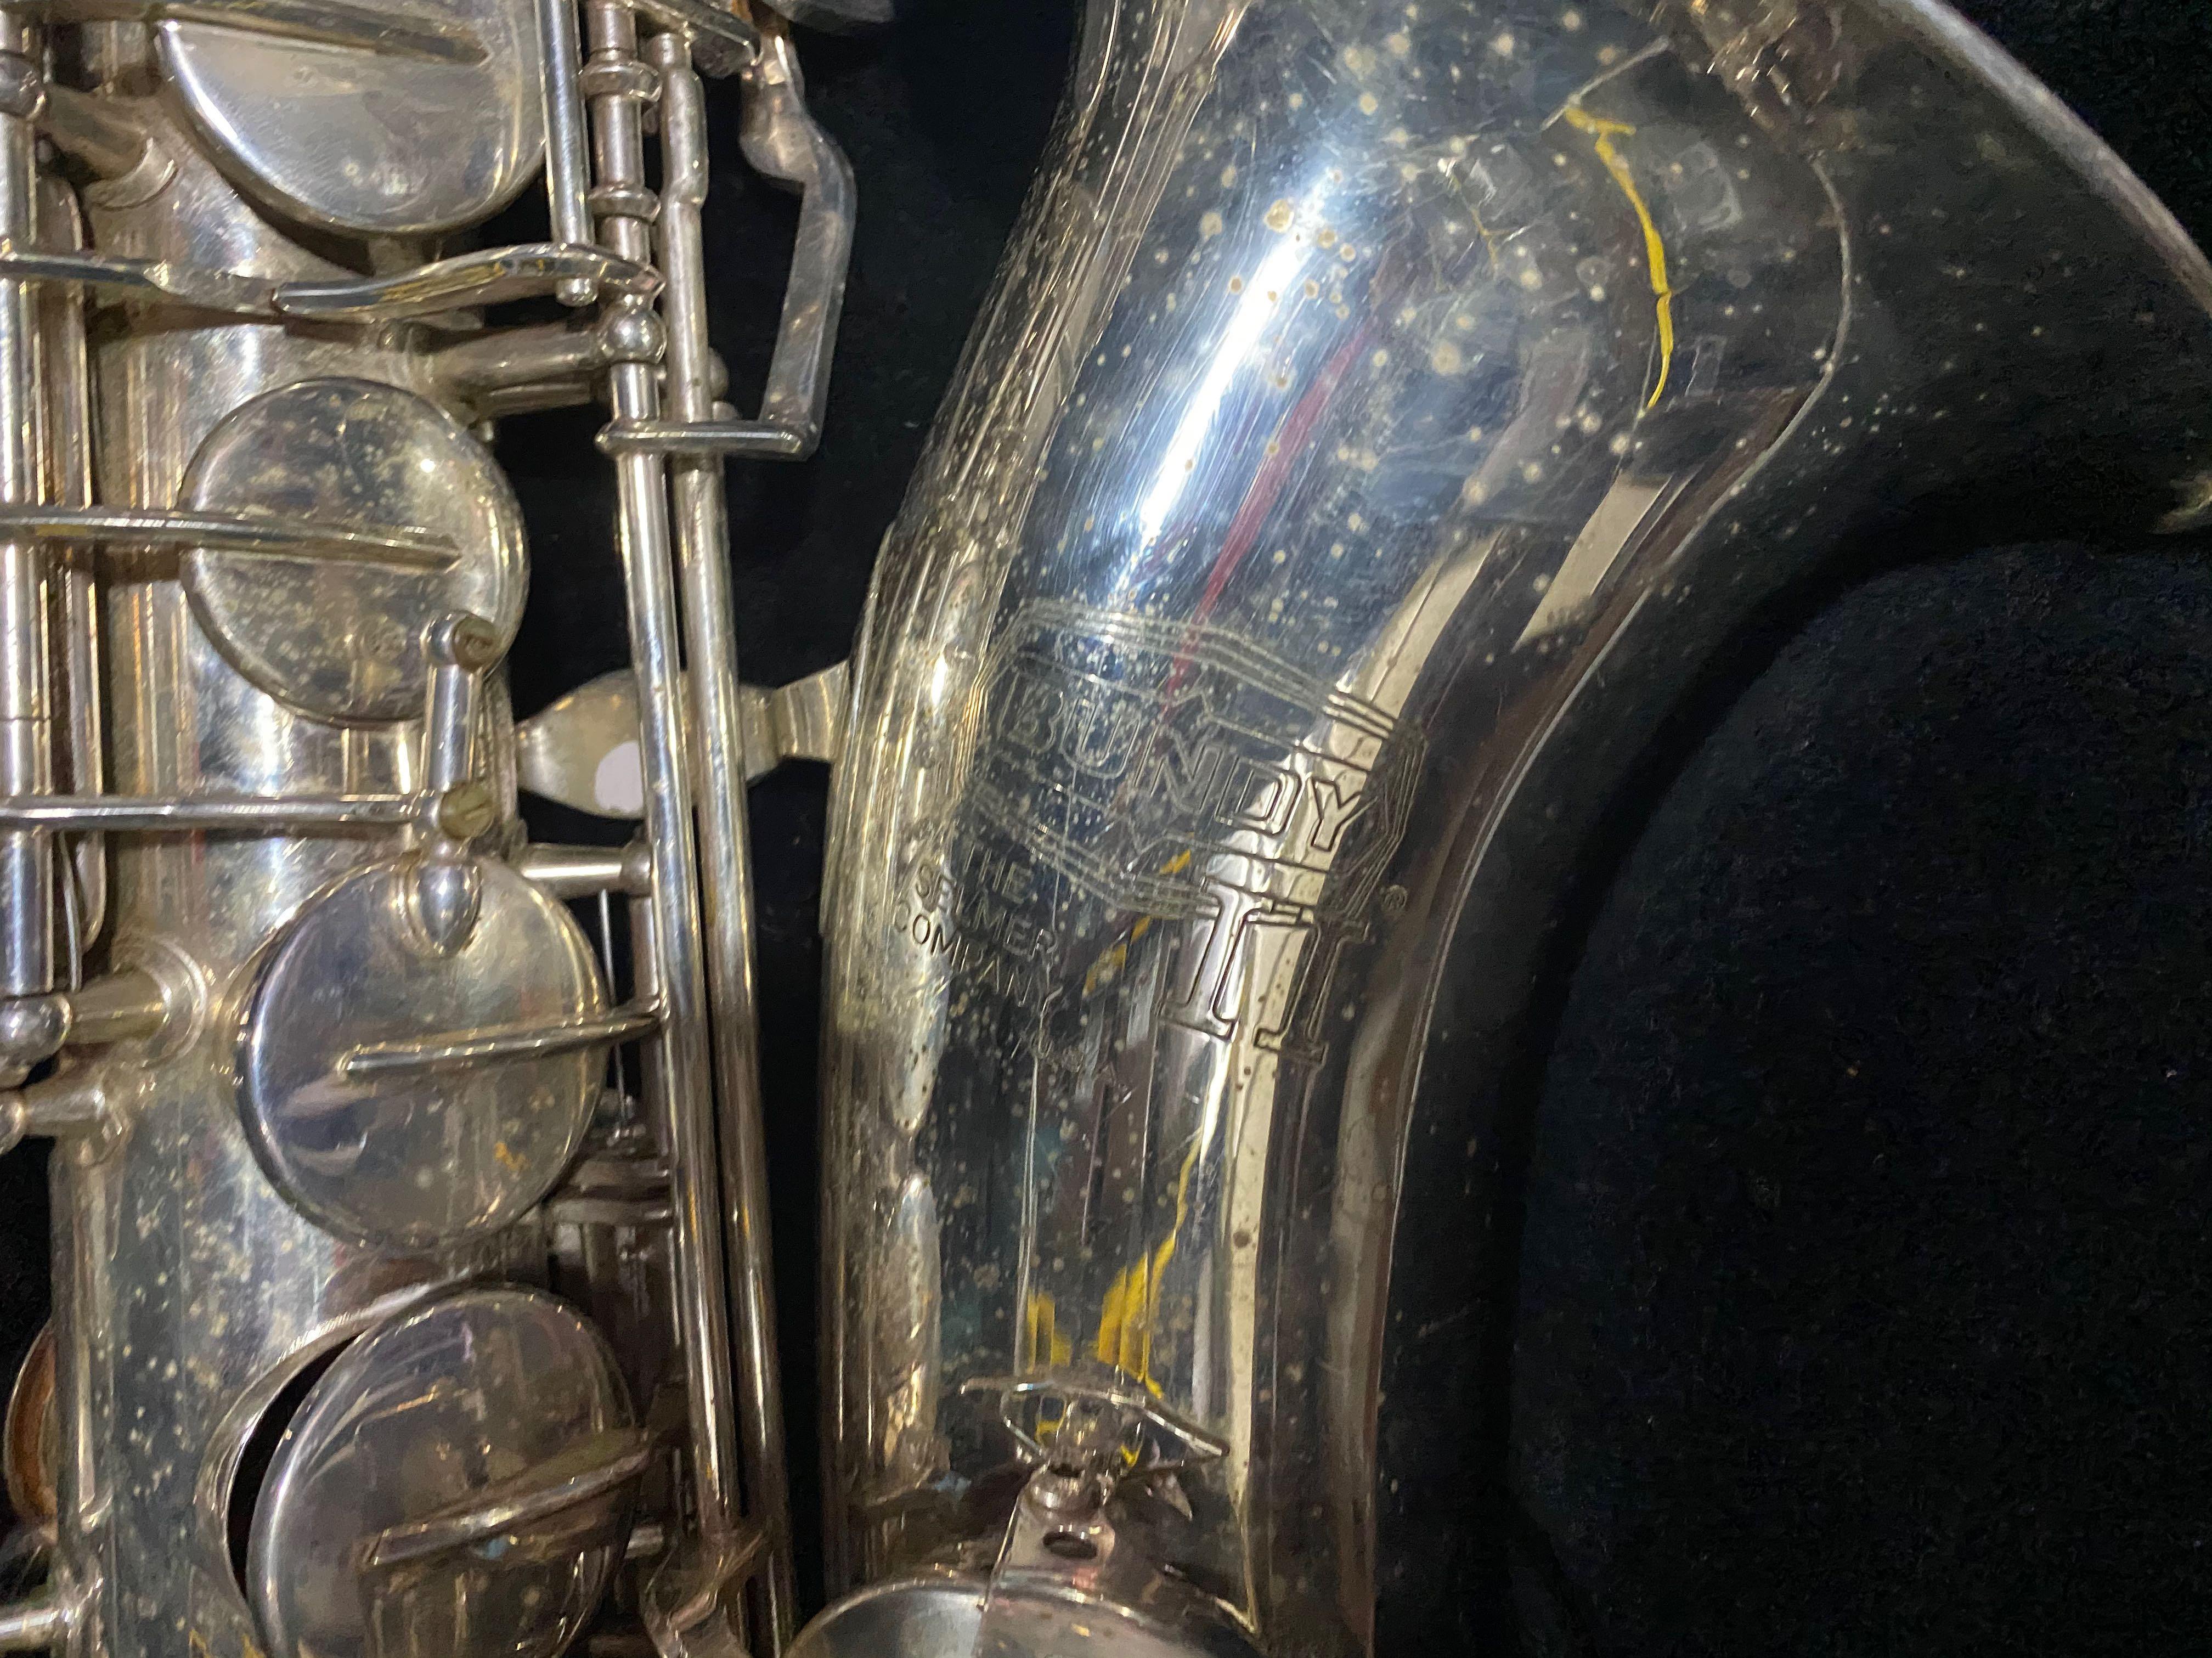 Selmer Bundy II Tenor Saxophone